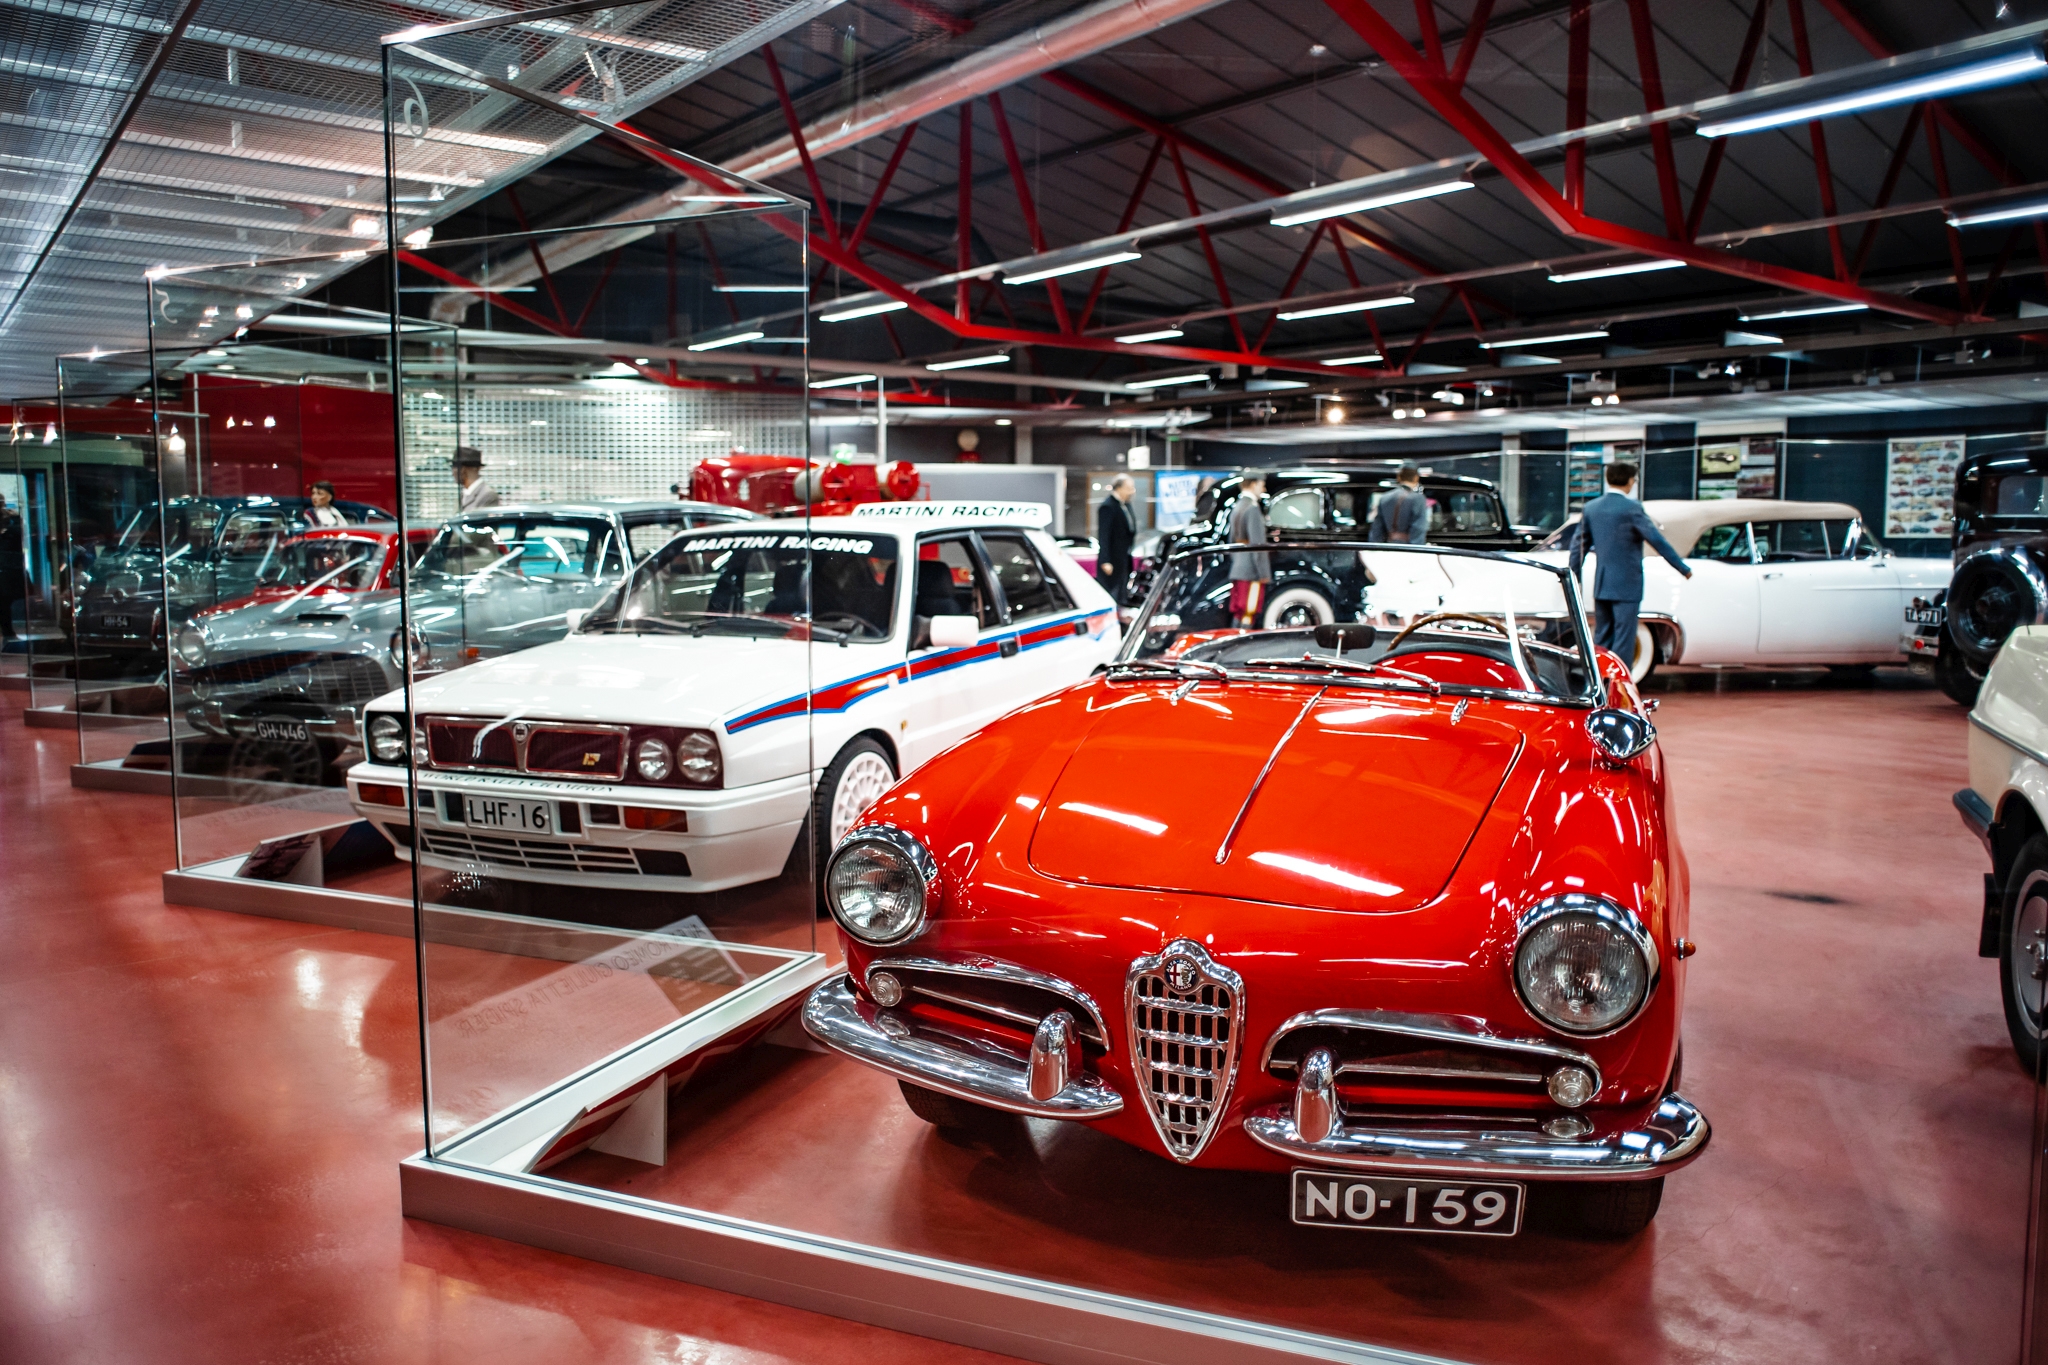 Vanhoja italialaisia autoja esillä näyttelyssä.